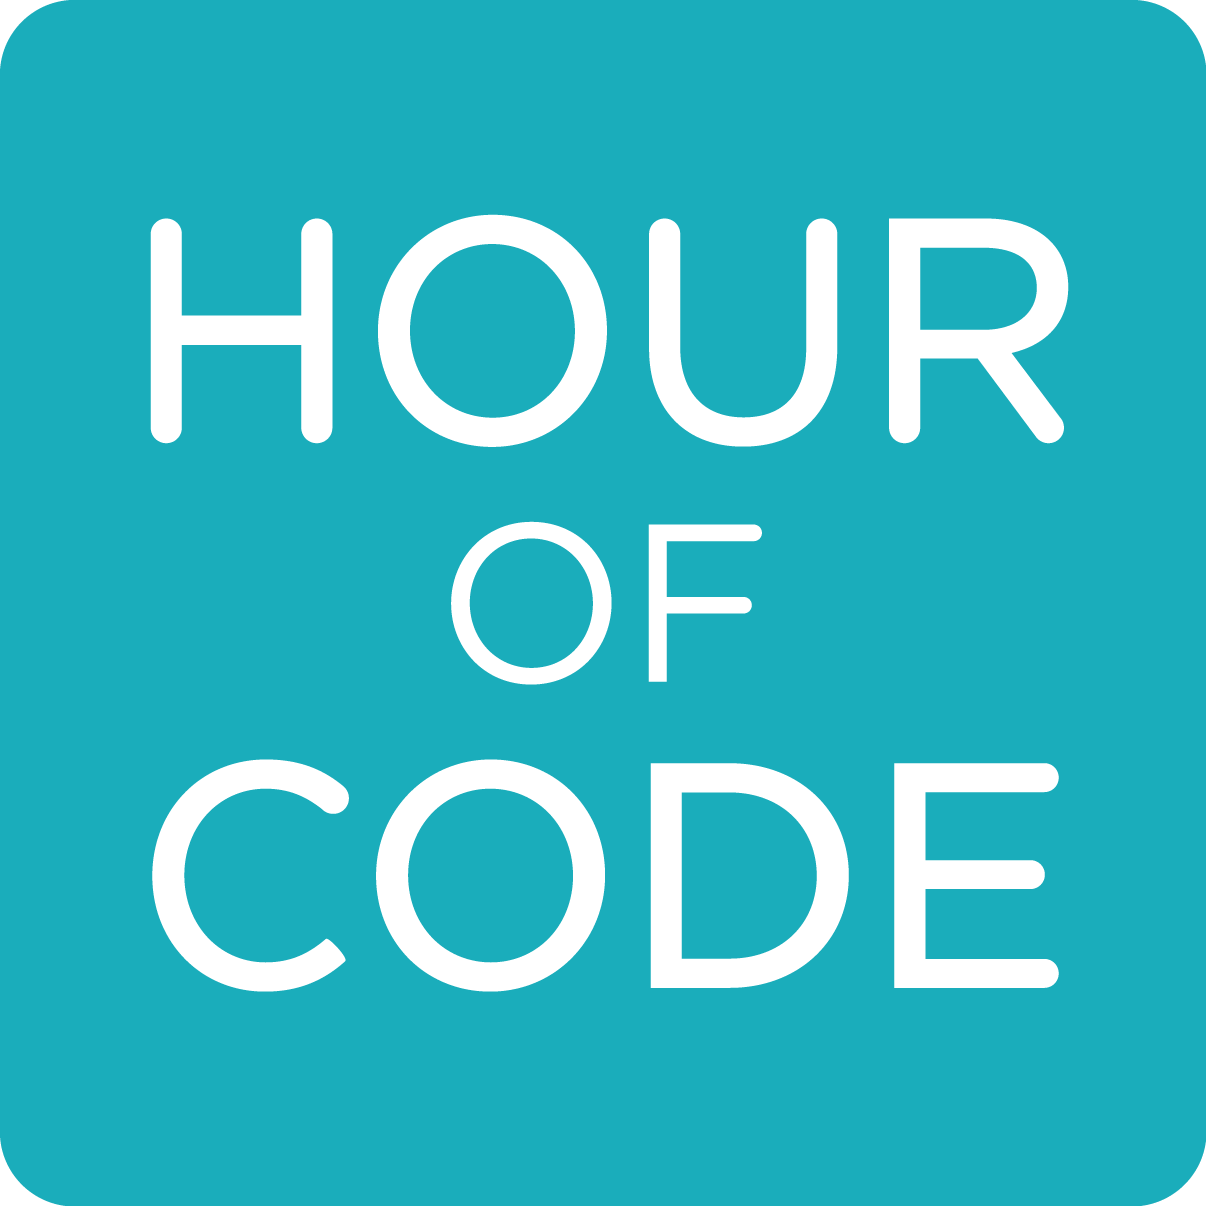 Computer Science Education Week - Hour of Code